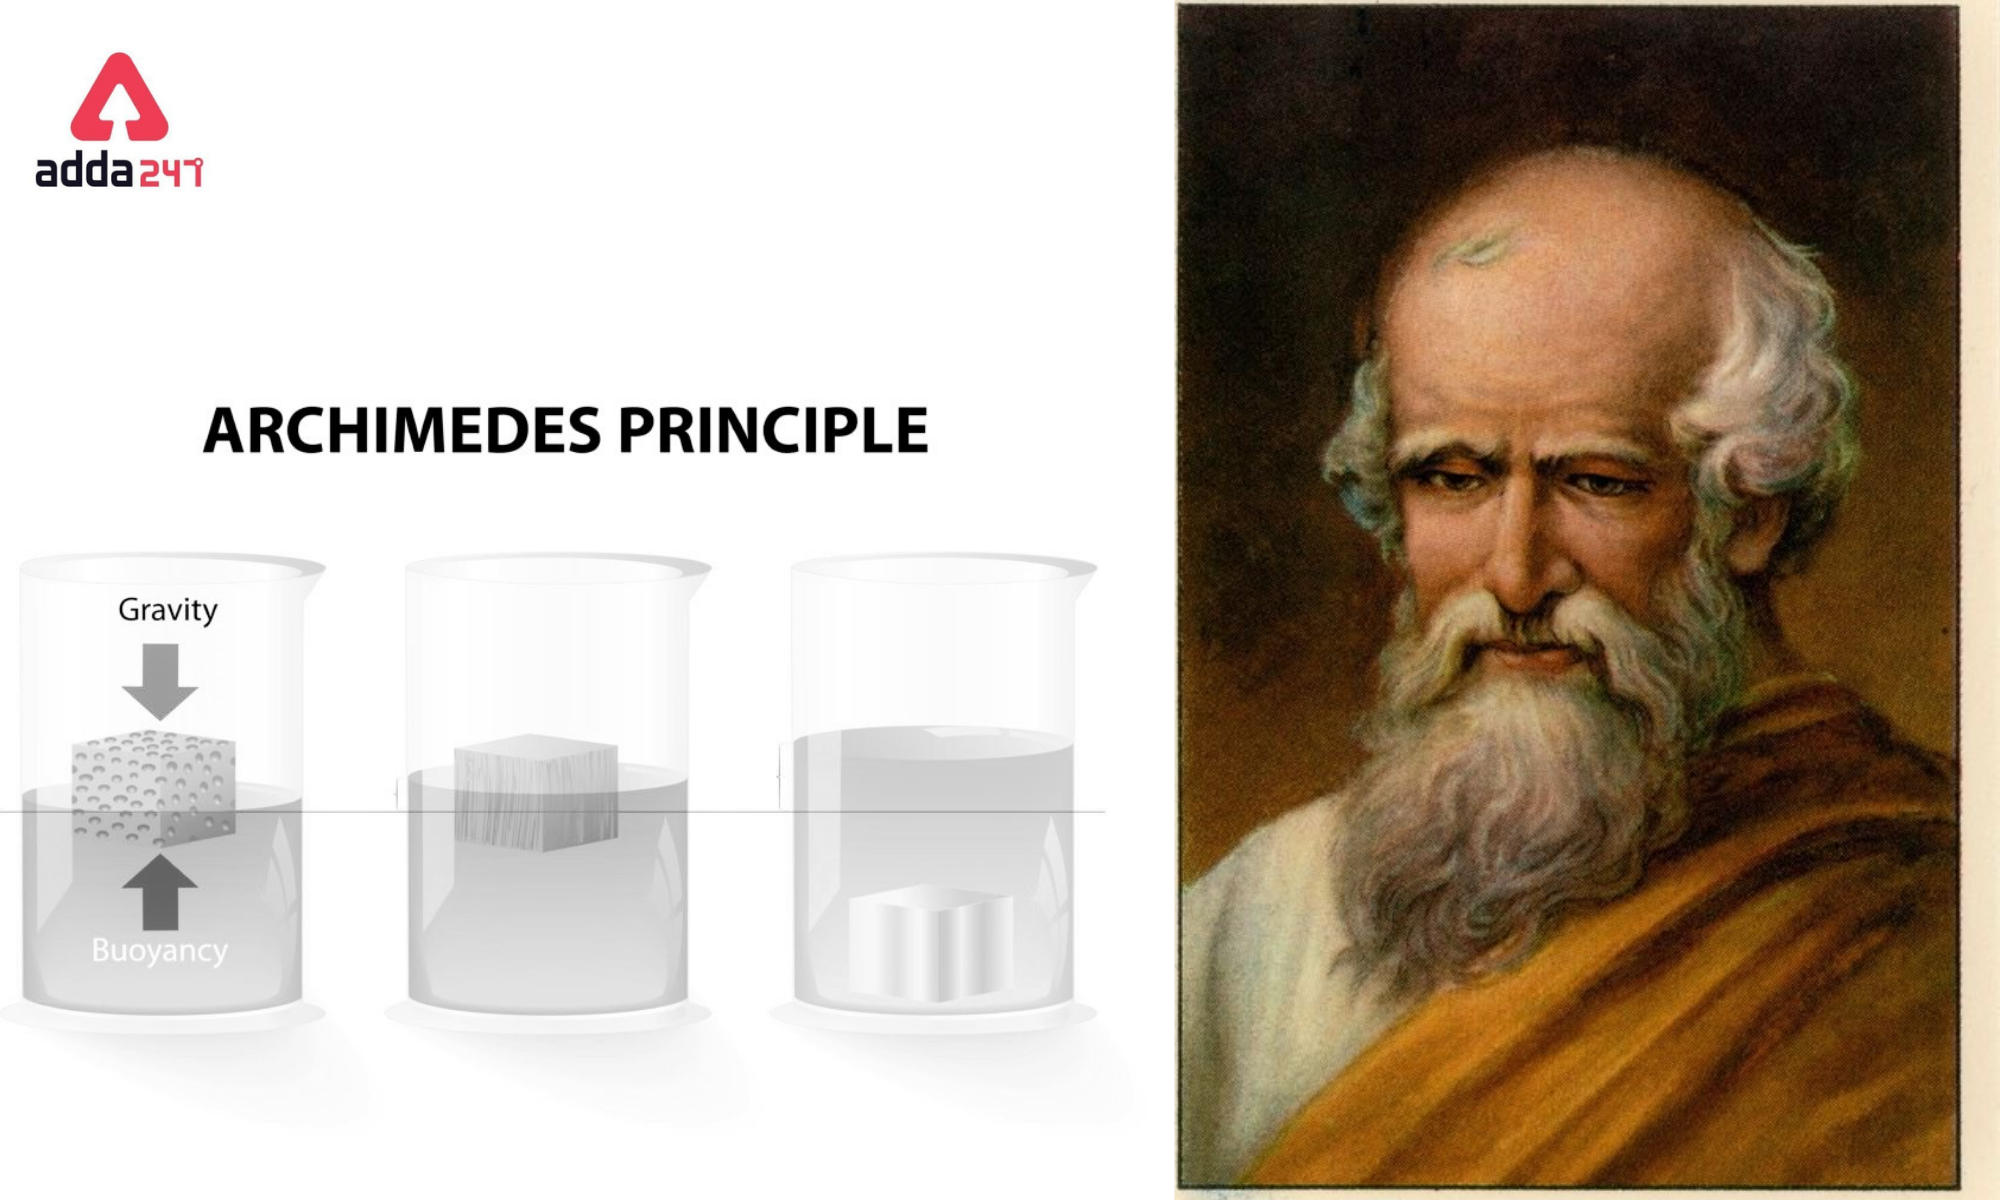 Archimedews 